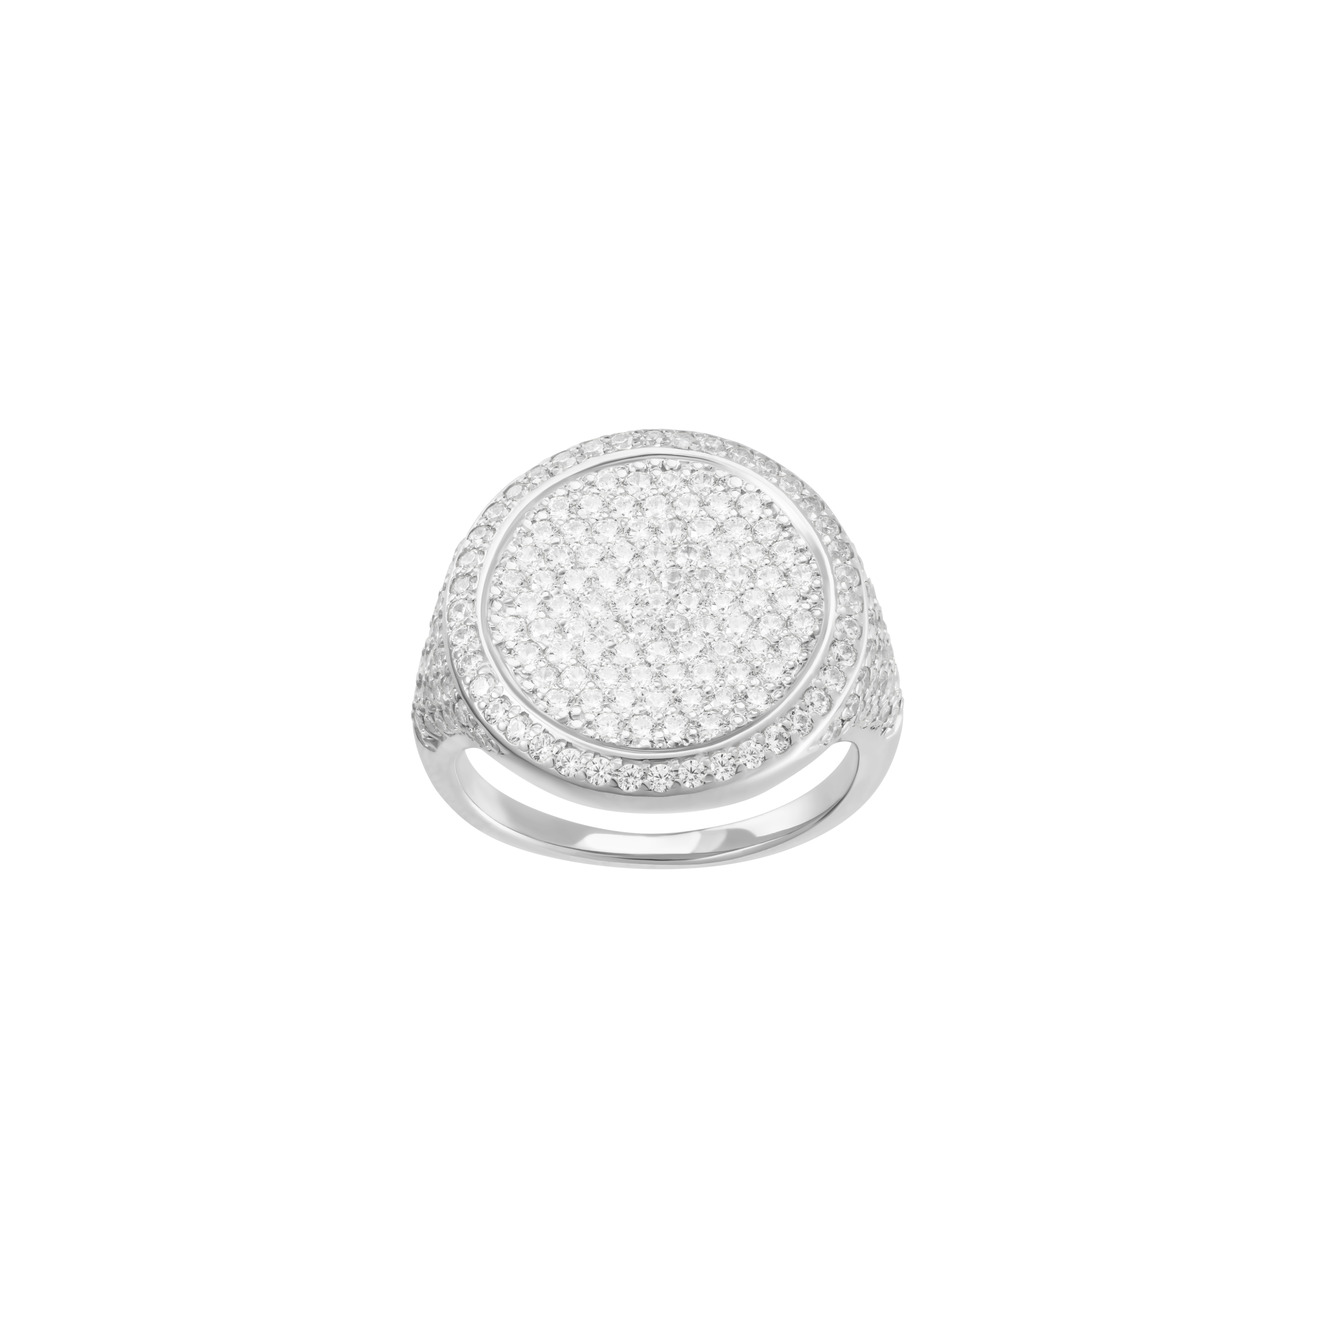 Jewlia Печатка-круг из серебра с кристаллами jewlia позолоченный прямоугольный медальон из серебра с зелеными кристаллами